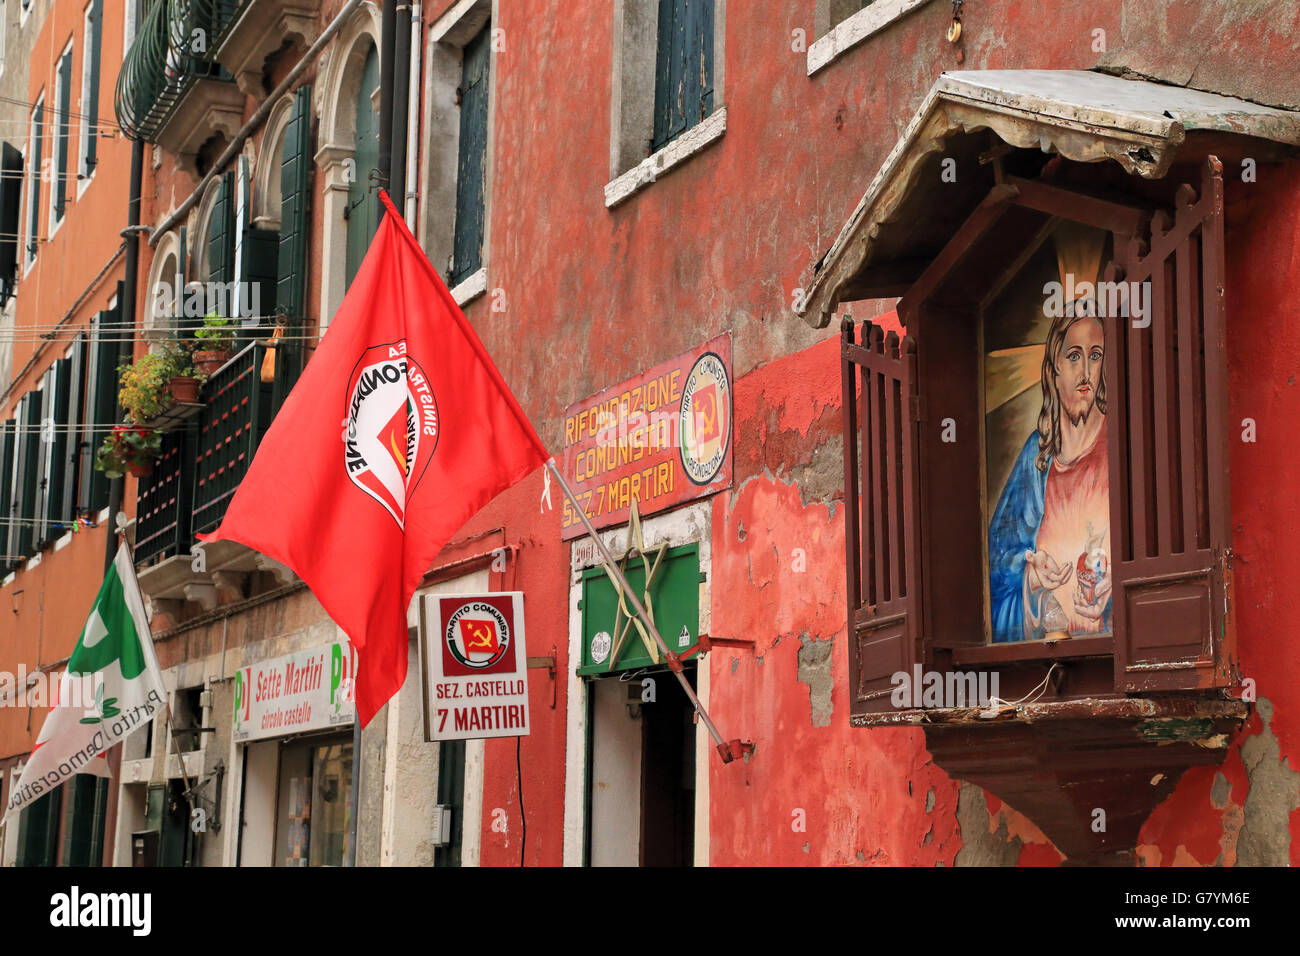 Office of the Communist Refoundation Party (Partito della Rifondazione Comunista, PRC) in Venice, Italy Stock Photo